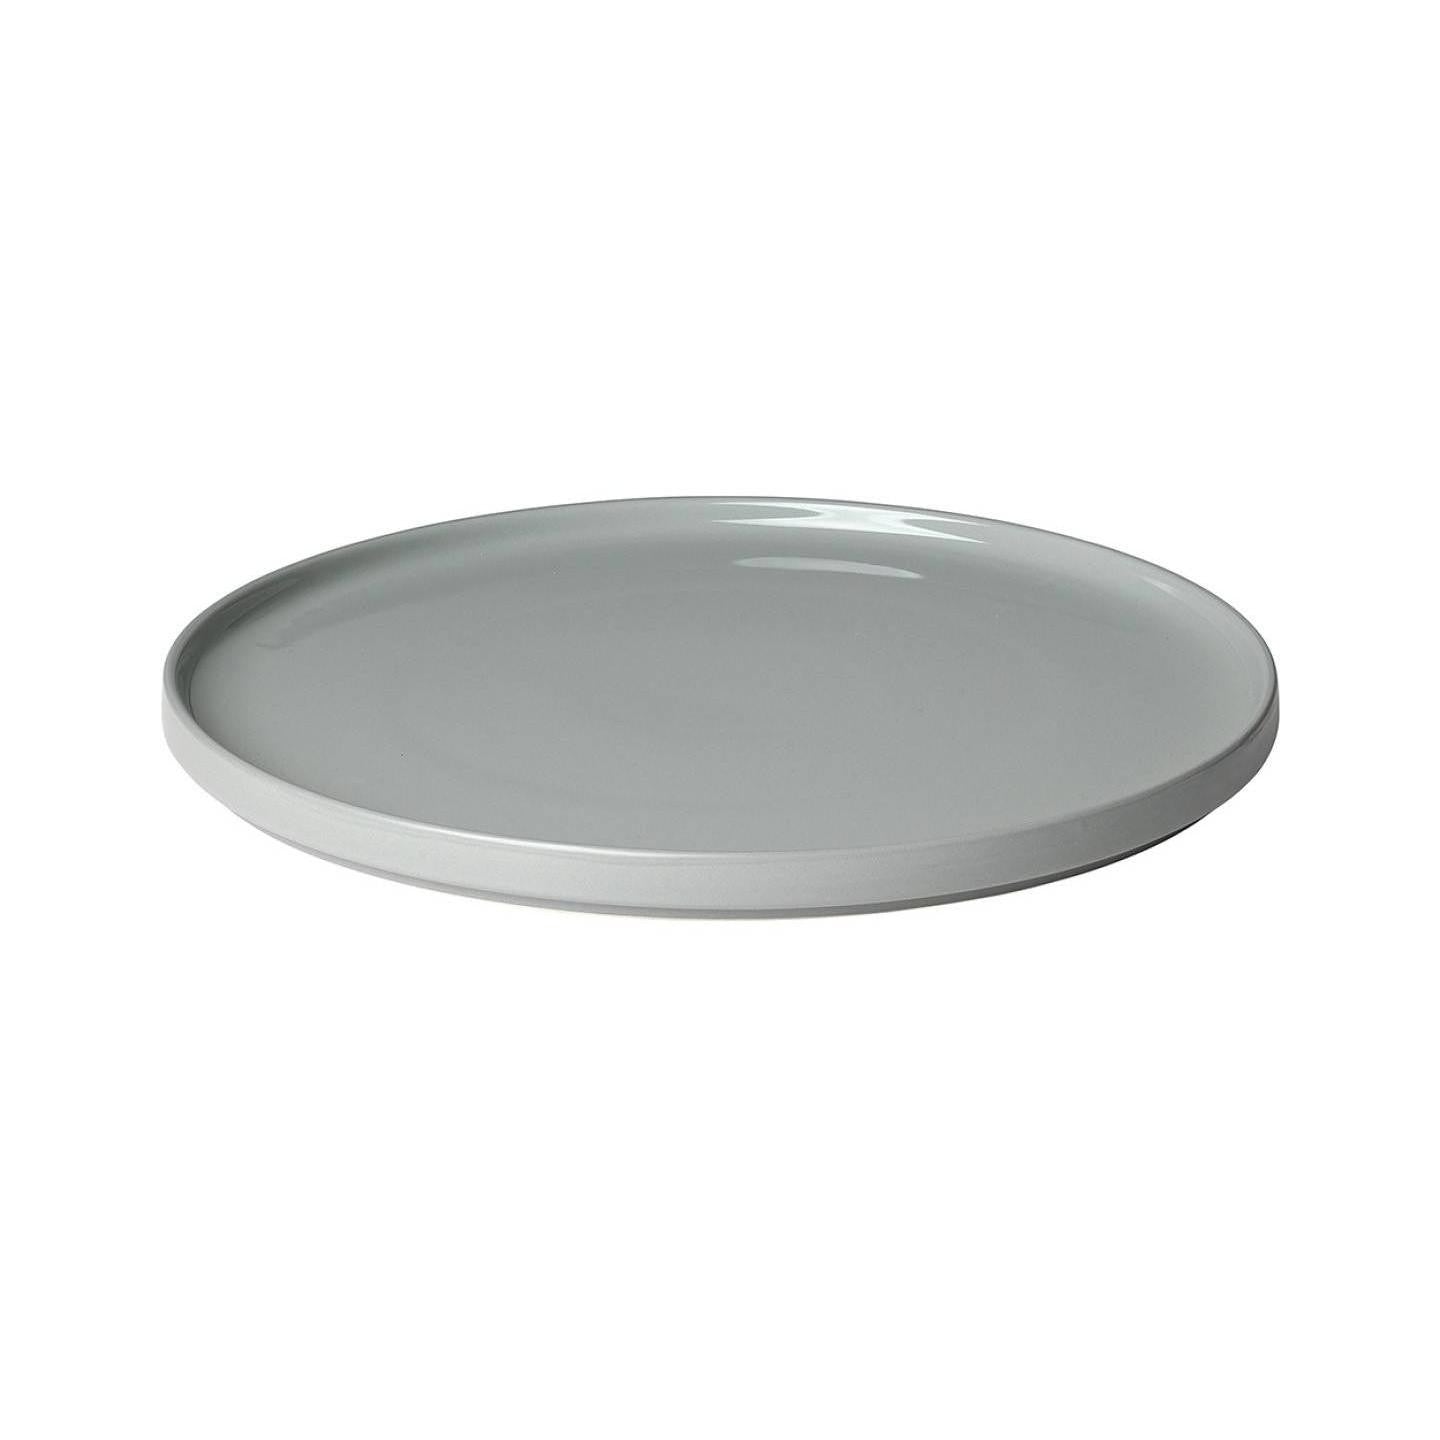 Round Serving Plate 35cm, Grey Color - صحن تقديم مستدير 35سم, لون رمادي